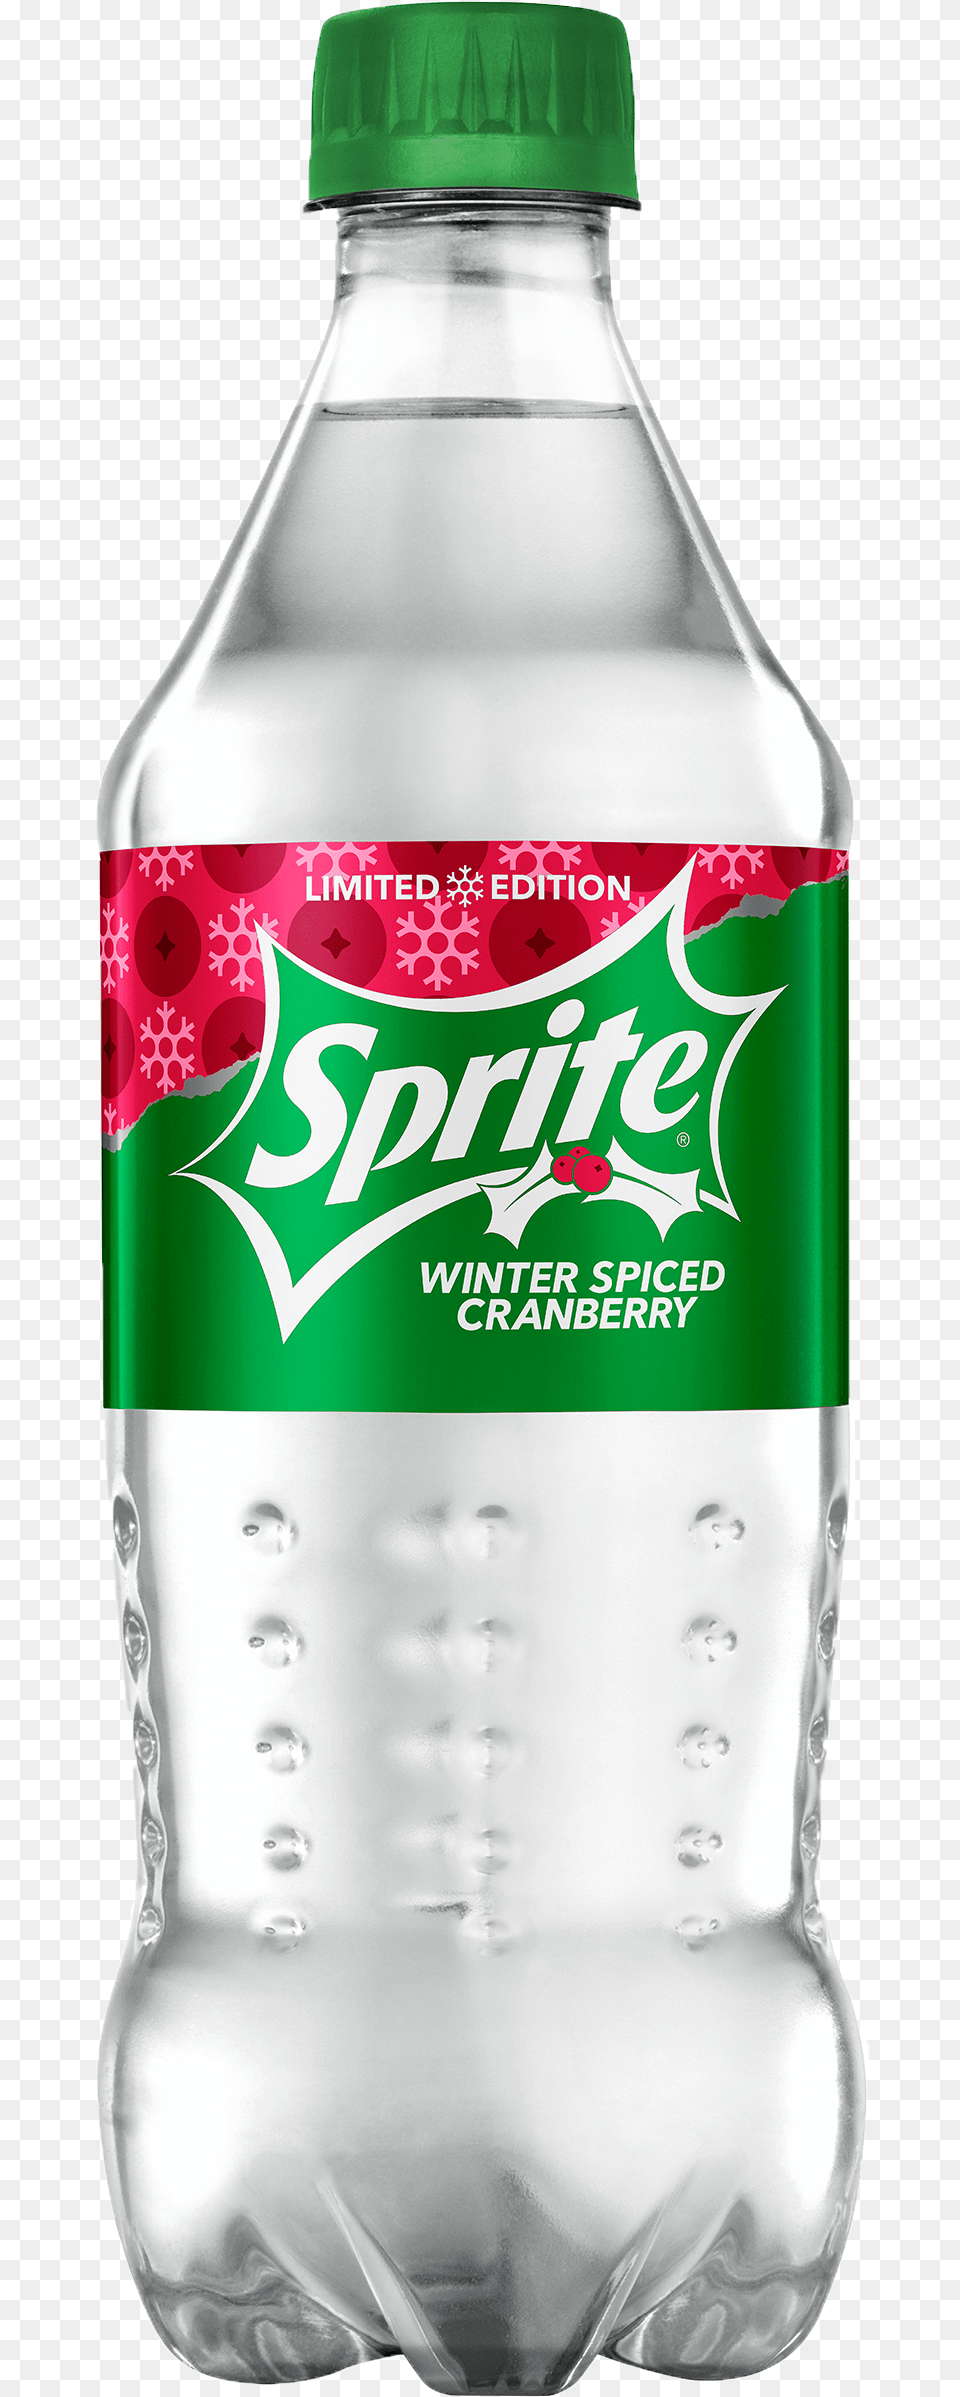 Spiced Cran Sprite Winter Spiced Cranberry, Bottle, Beverage, Water Bottle, Soda Png Image